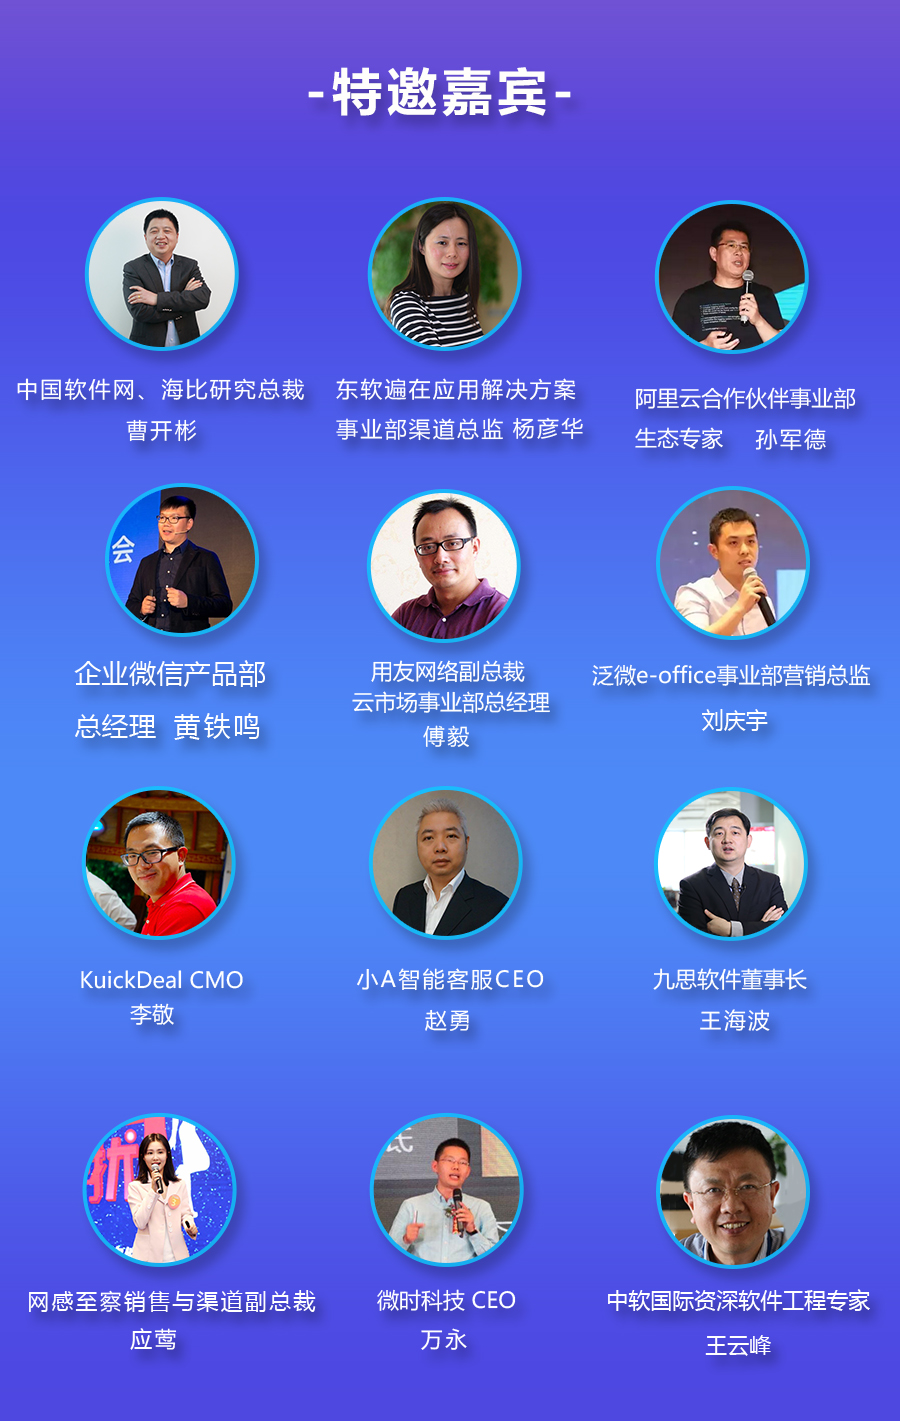 2018中国软件生态大会暨第十一届中国软件渠道大会 昆明站